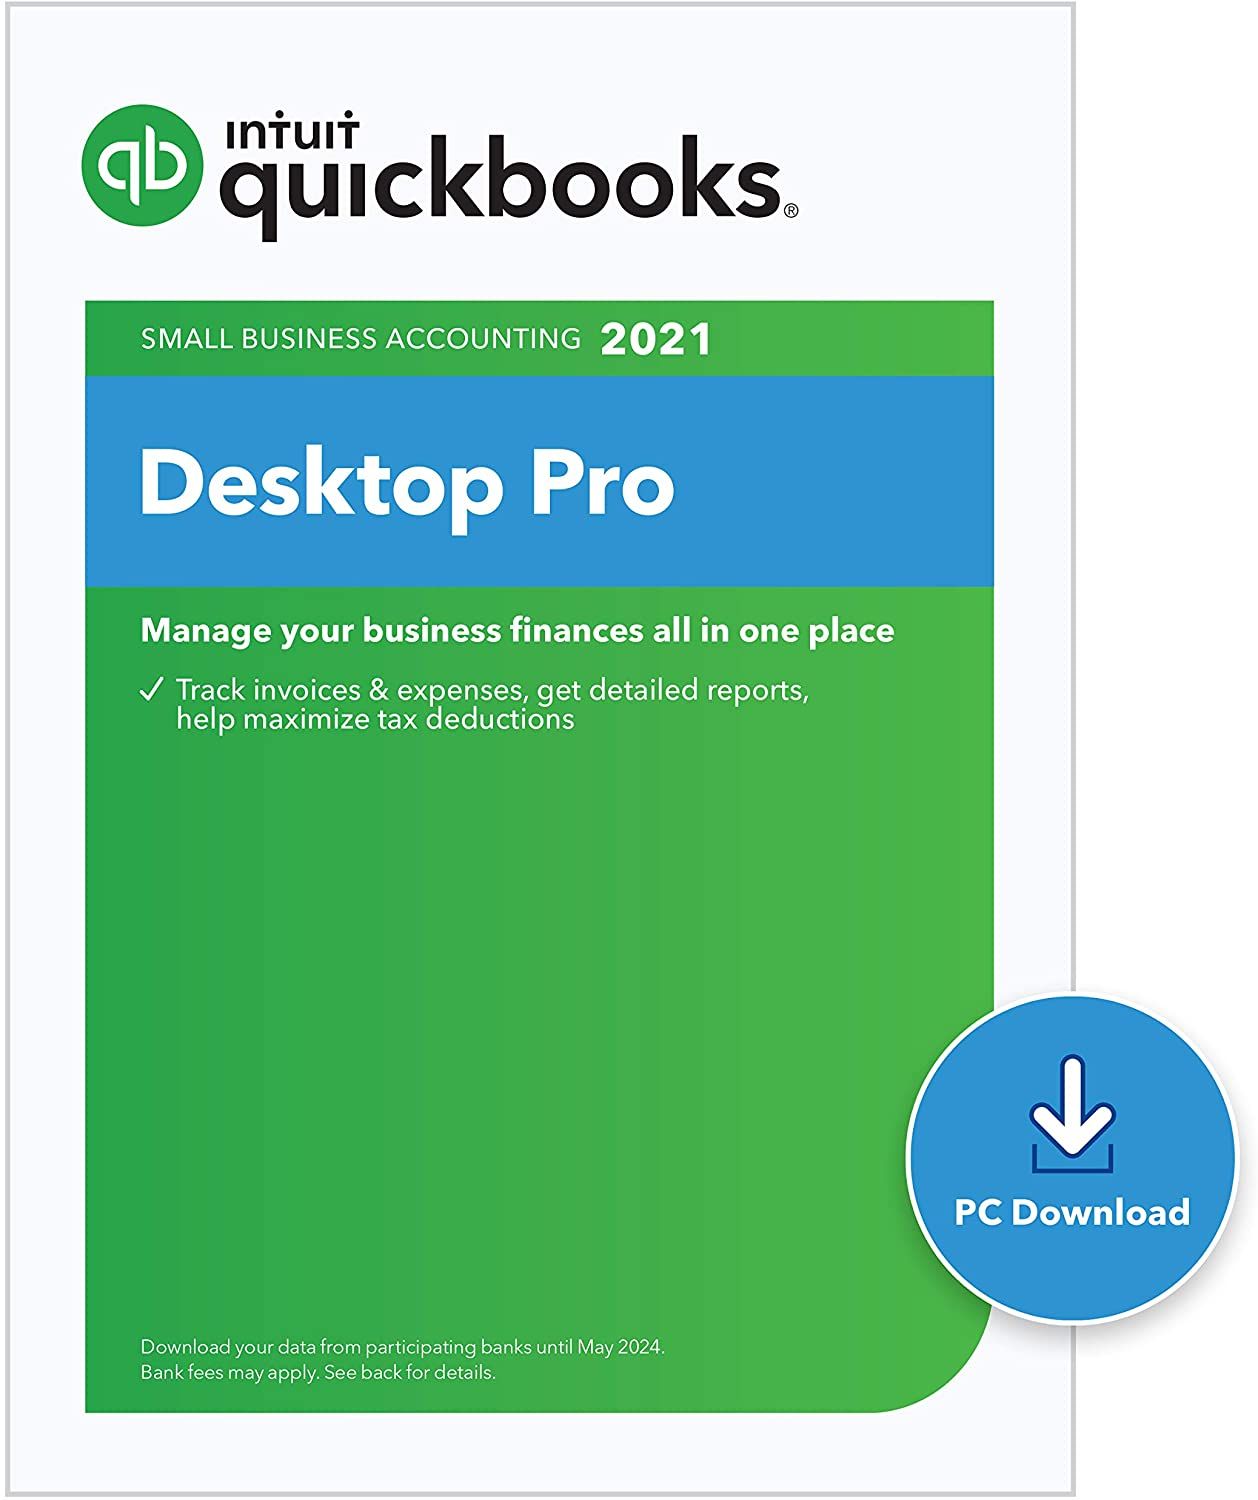 quickbooks desktop pro